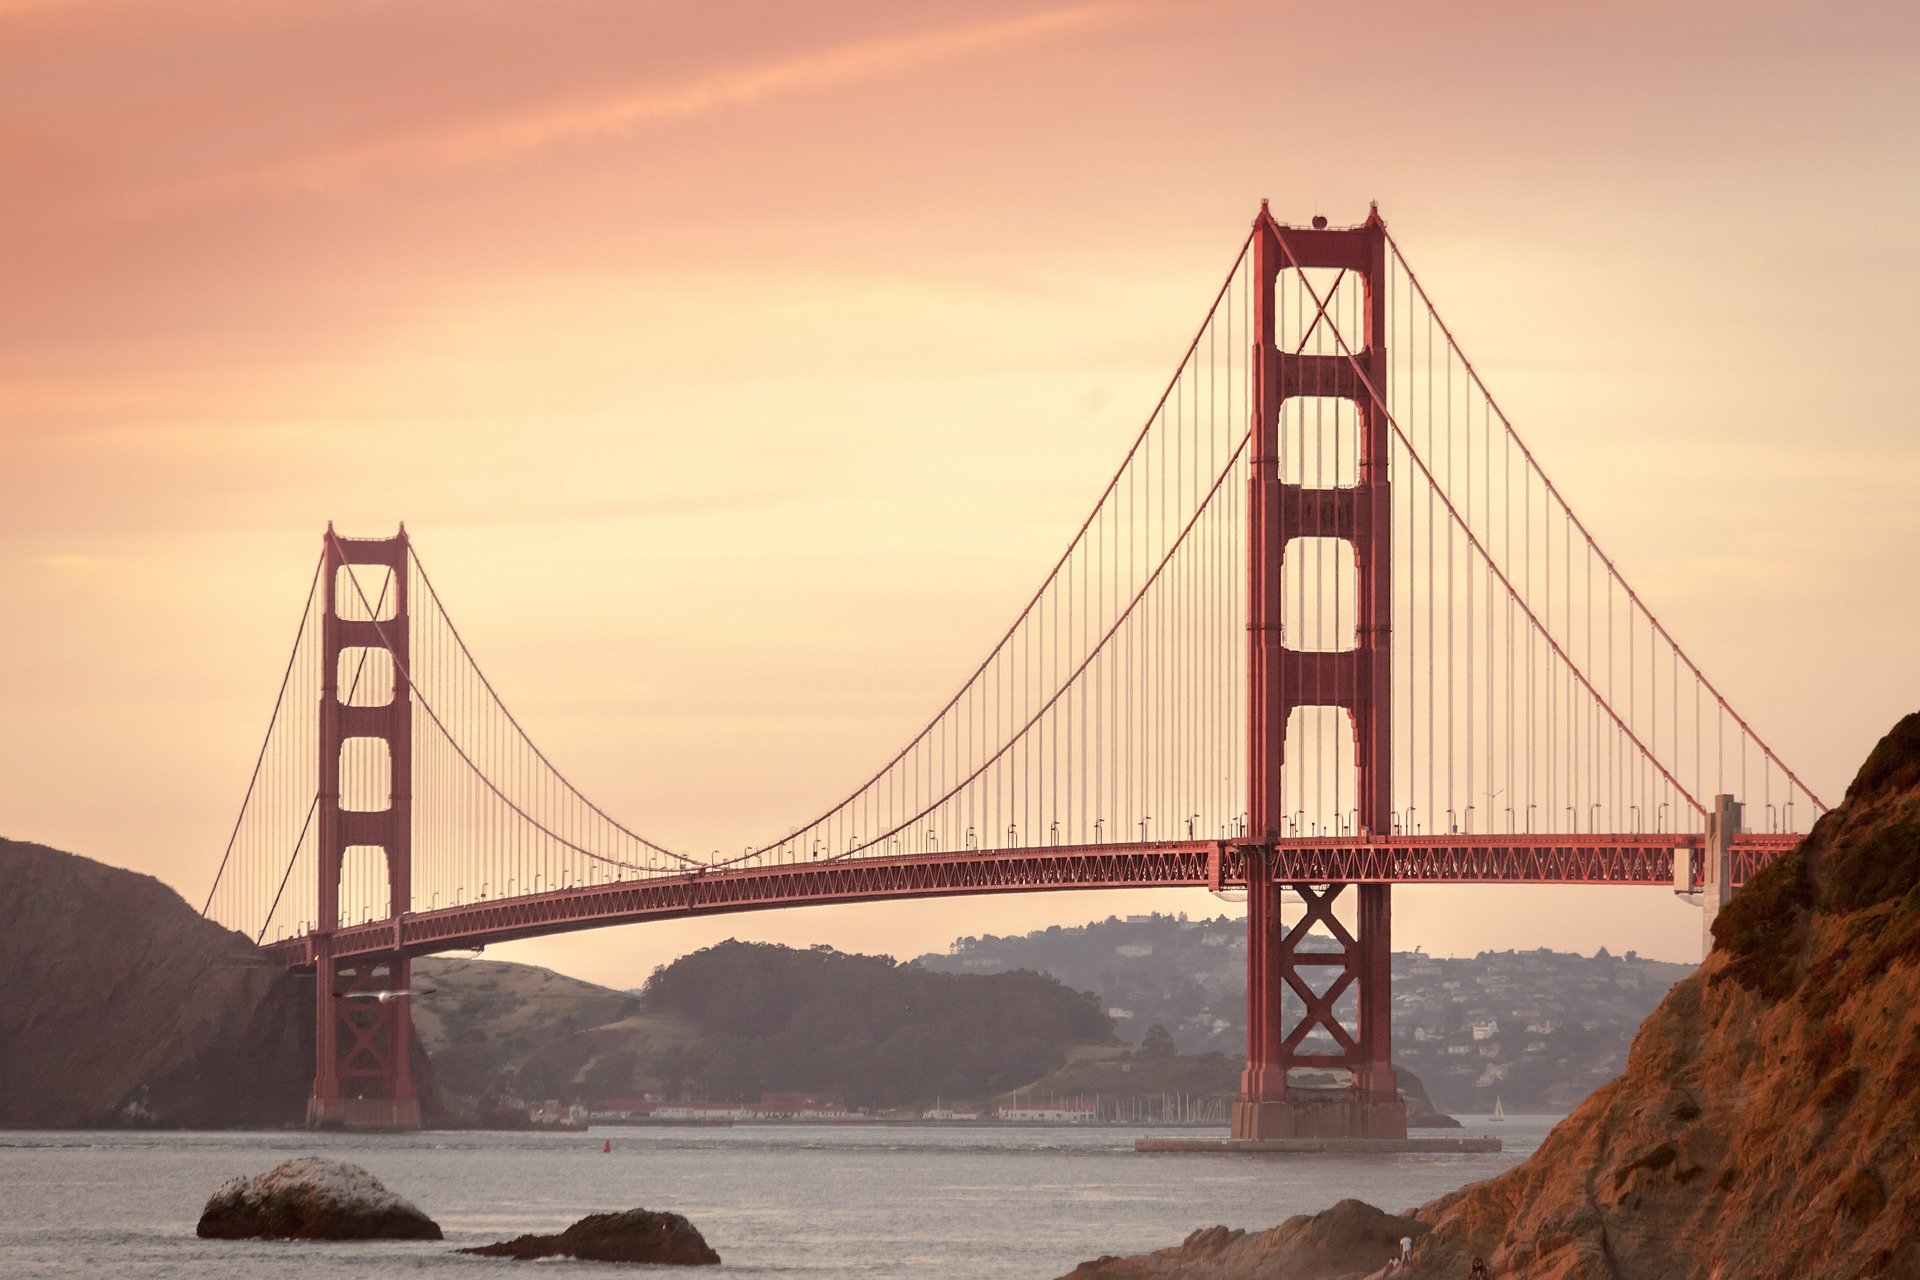 دليل السياحة في سان فرانسيسكو , كل ماتحتاج له لزيارة المدينة الفيتكورية في امريكا